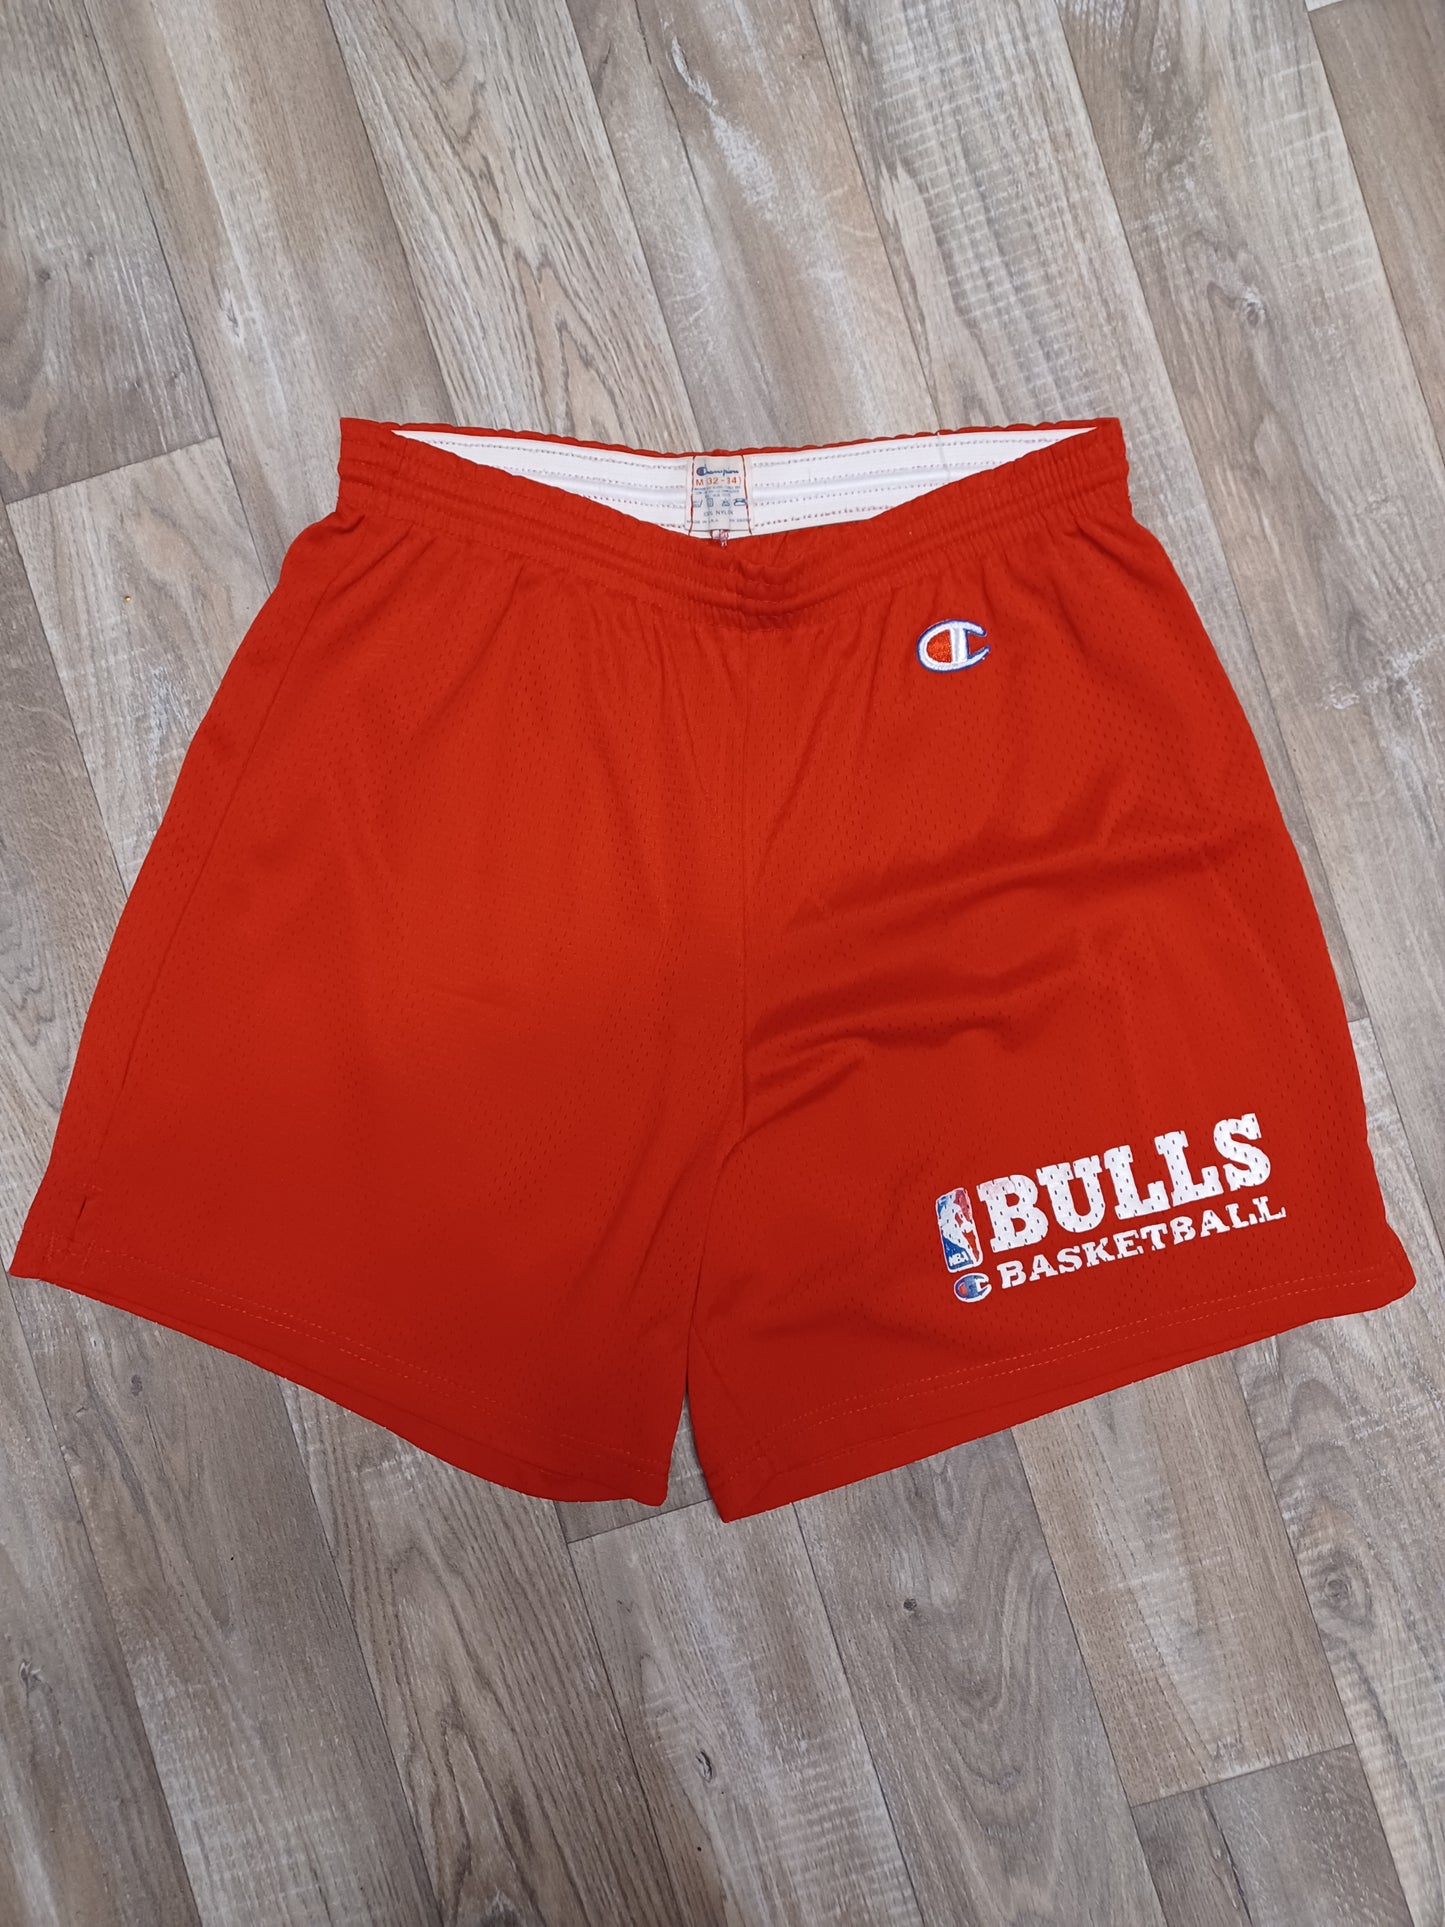 Chicago Bulls Shorts Size Medium